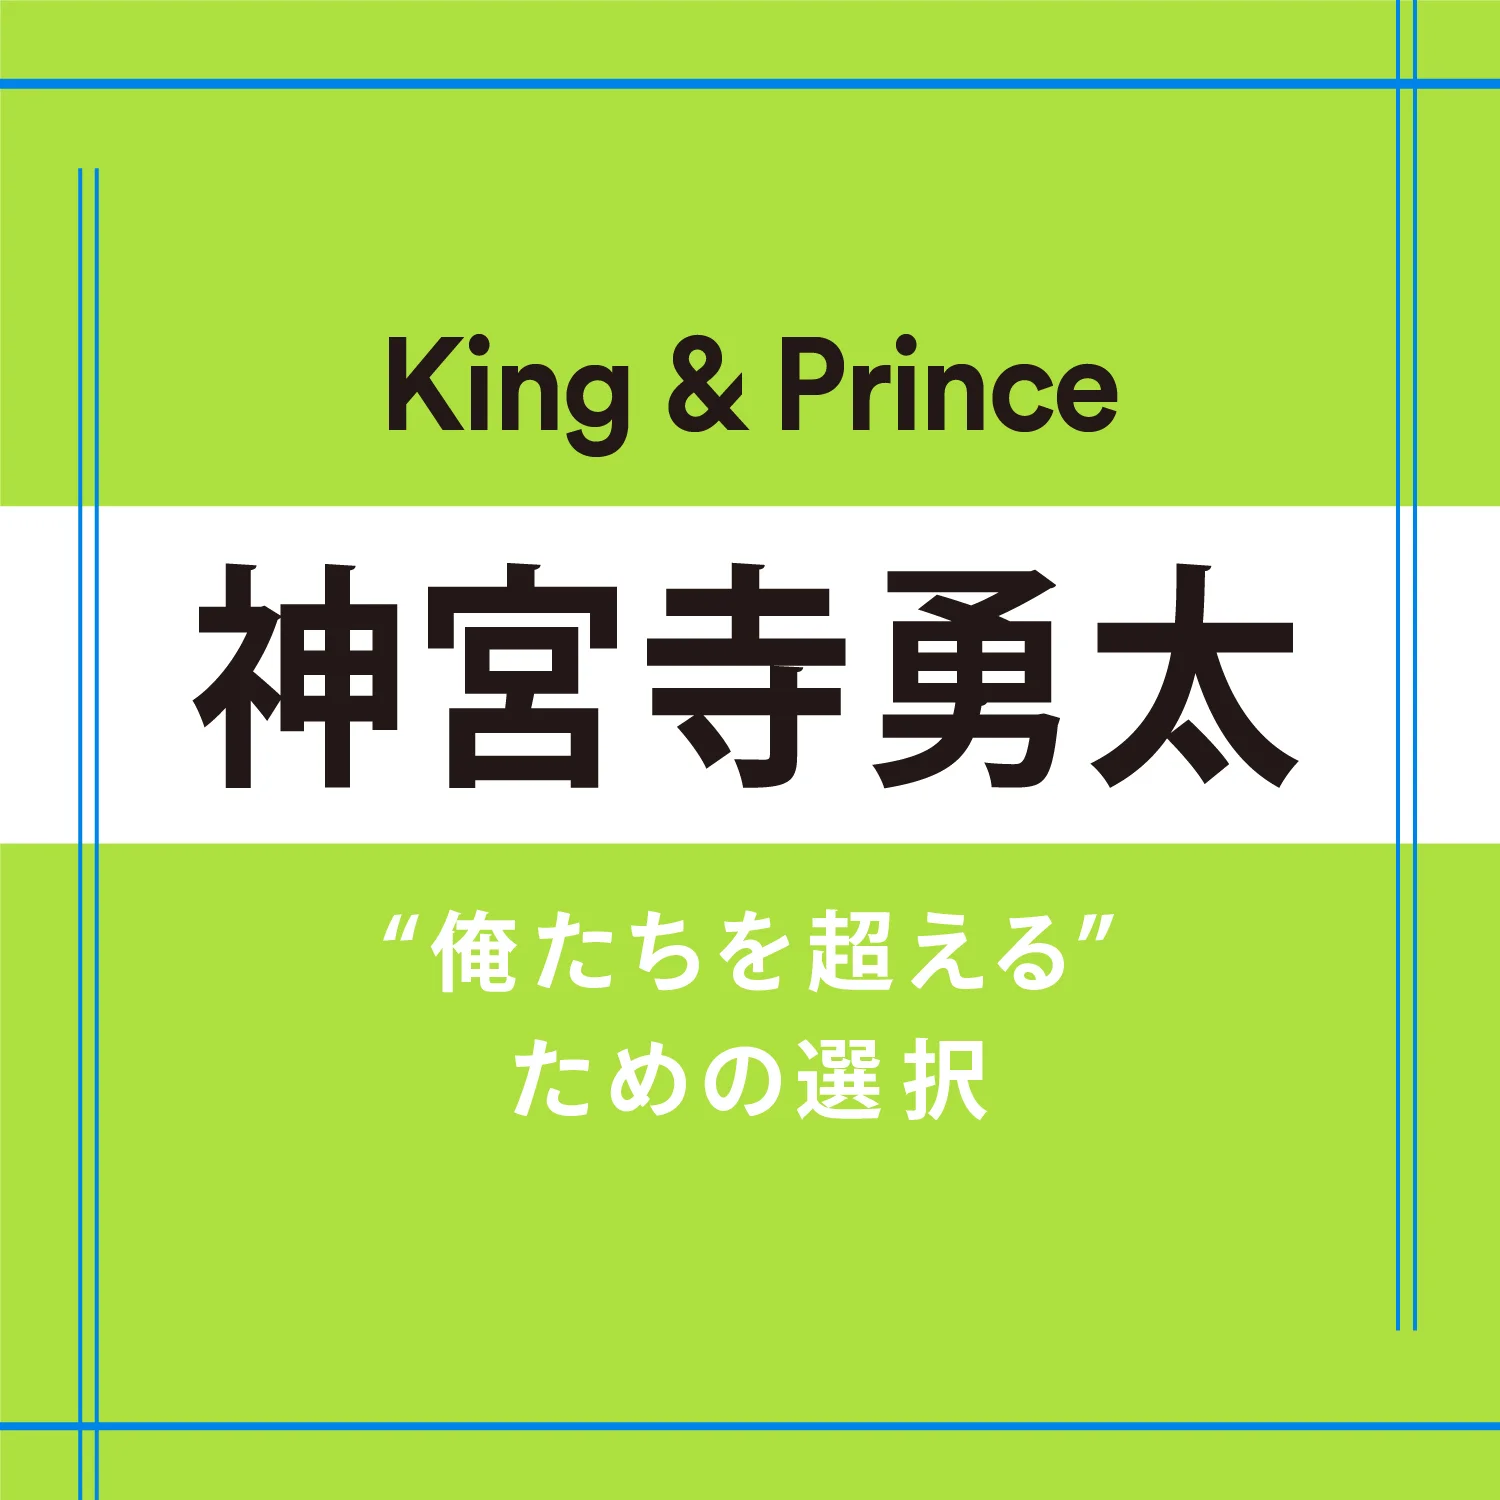 King  Prince】神宮寺勇太さん「選択を悩むのではなく、自分の選択肢を正解に導くように努力する」 | エンタメ | MORE